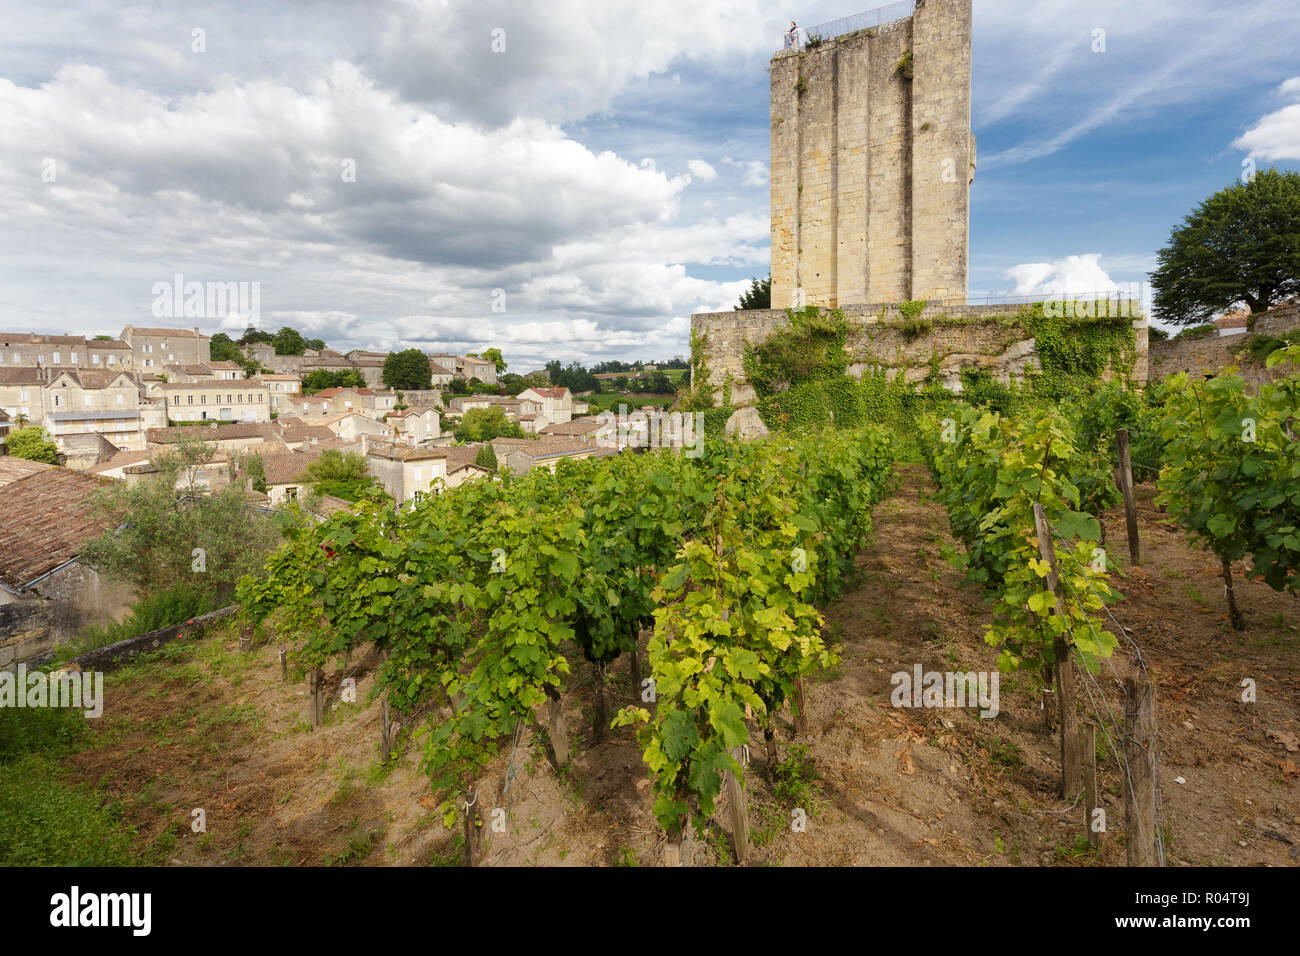 Weinberg in der Saint Emilion Dorf in der Nähe einer alten mittelalterlichen Turm, Frankreich Stockfoto